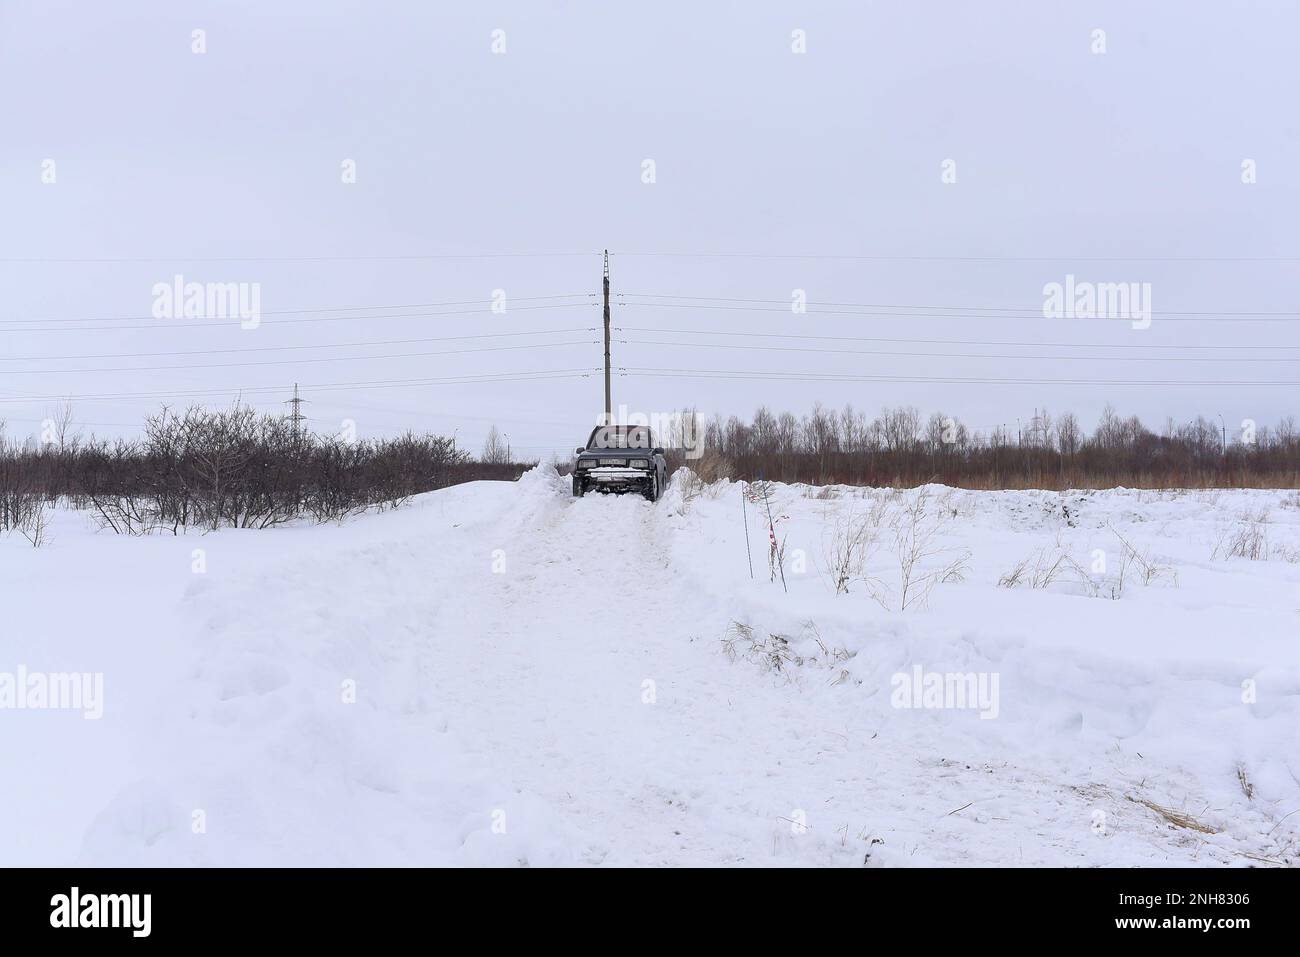 Fuoristrada il SUV 'Suzuki Escudo' 4x4 si sposta velocemente su una strada innevata su una collina in un campo in inverno. Foto Stock